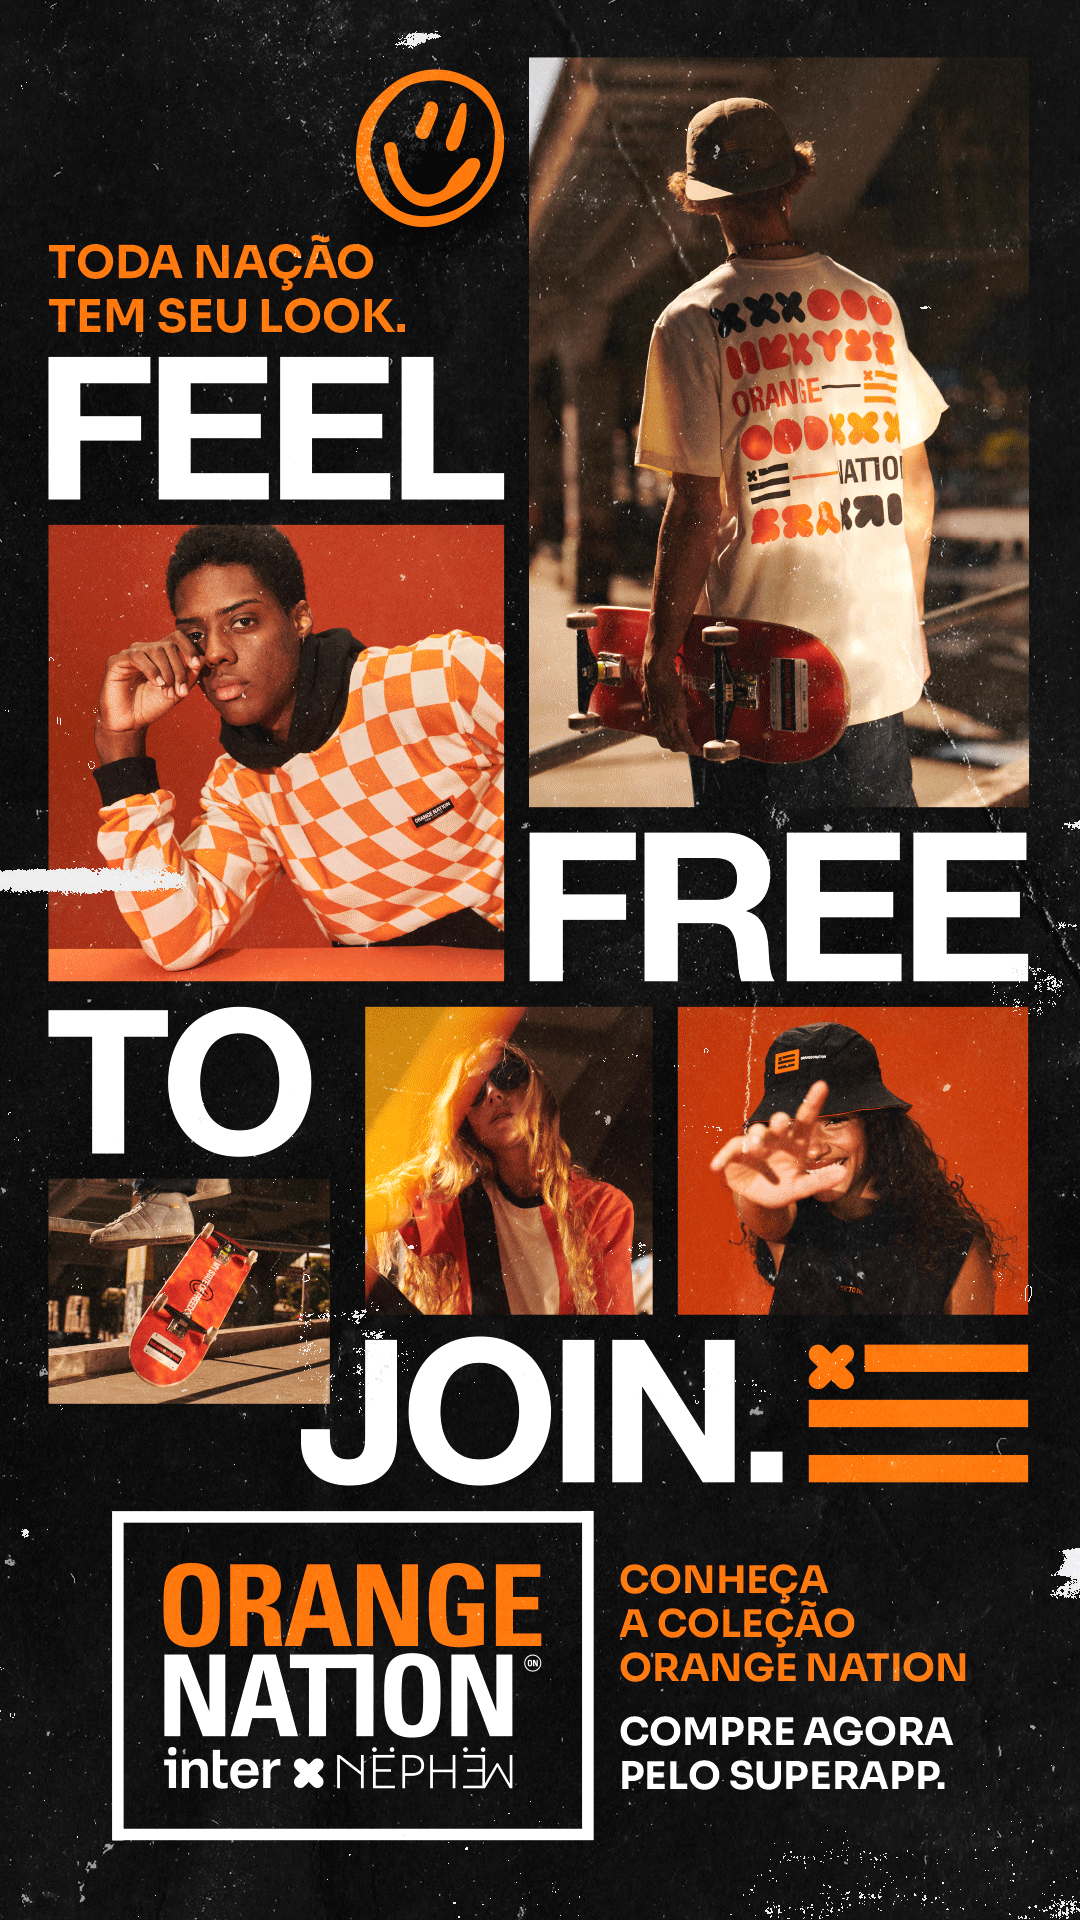 Gif com imagens de modelos usando as roupas da coleção Orange Nation em parceria com a Nephew, uma mensagem em texto diz "Conheça a coleção Orange Nation. Compre agora pelo Superapp"